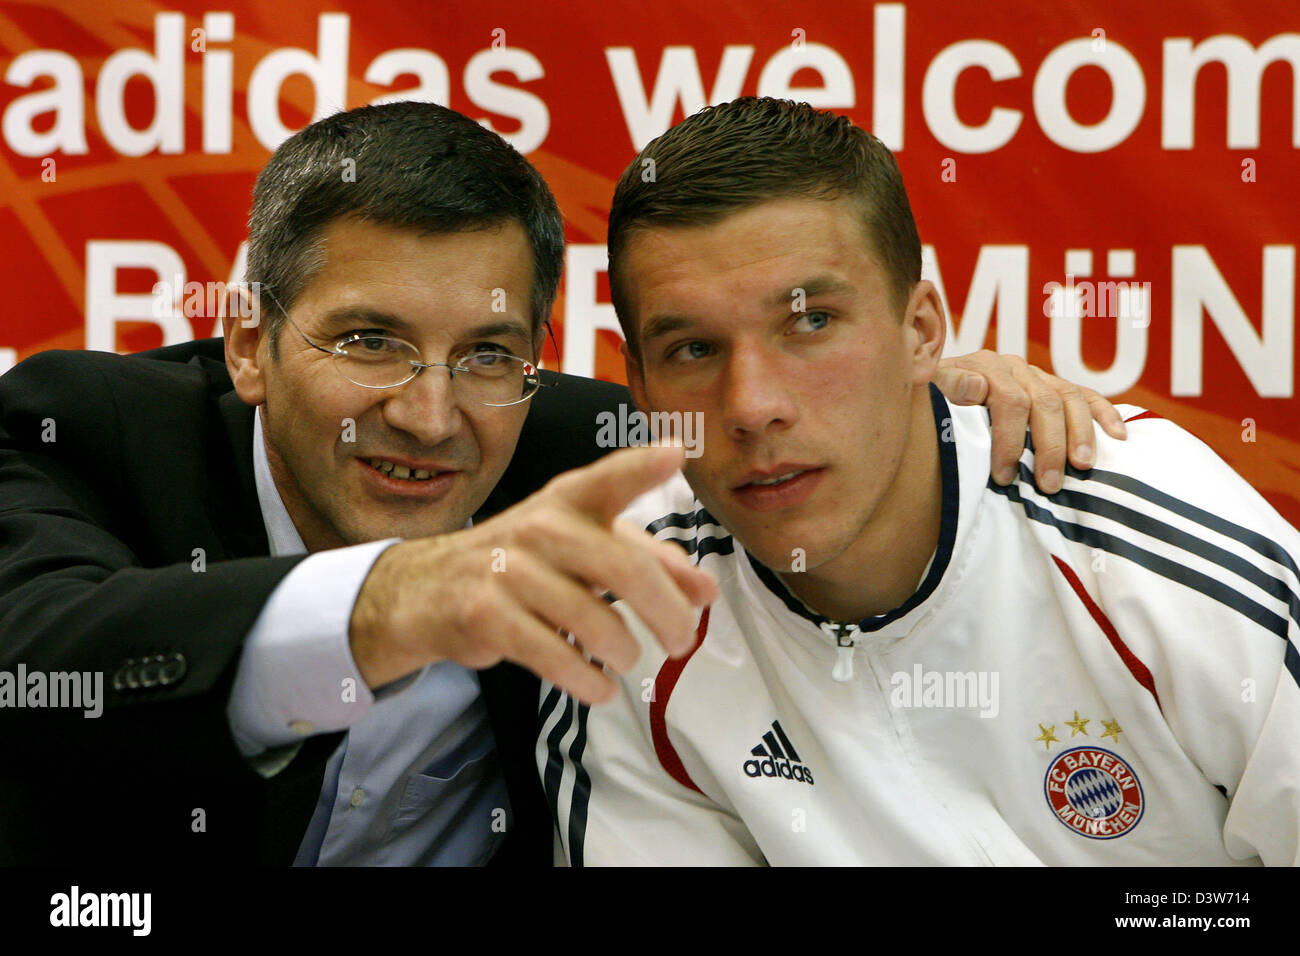 Herbert Hainer CHEF Adidas (L) s'entretient avec Lukas Podolski du FC Bayern  Munich pendant une séance d'autographes dans un magasin adidas à Dubaï,  Émirats arabes unis, le jeudi 11 janvier 2207. Photo :